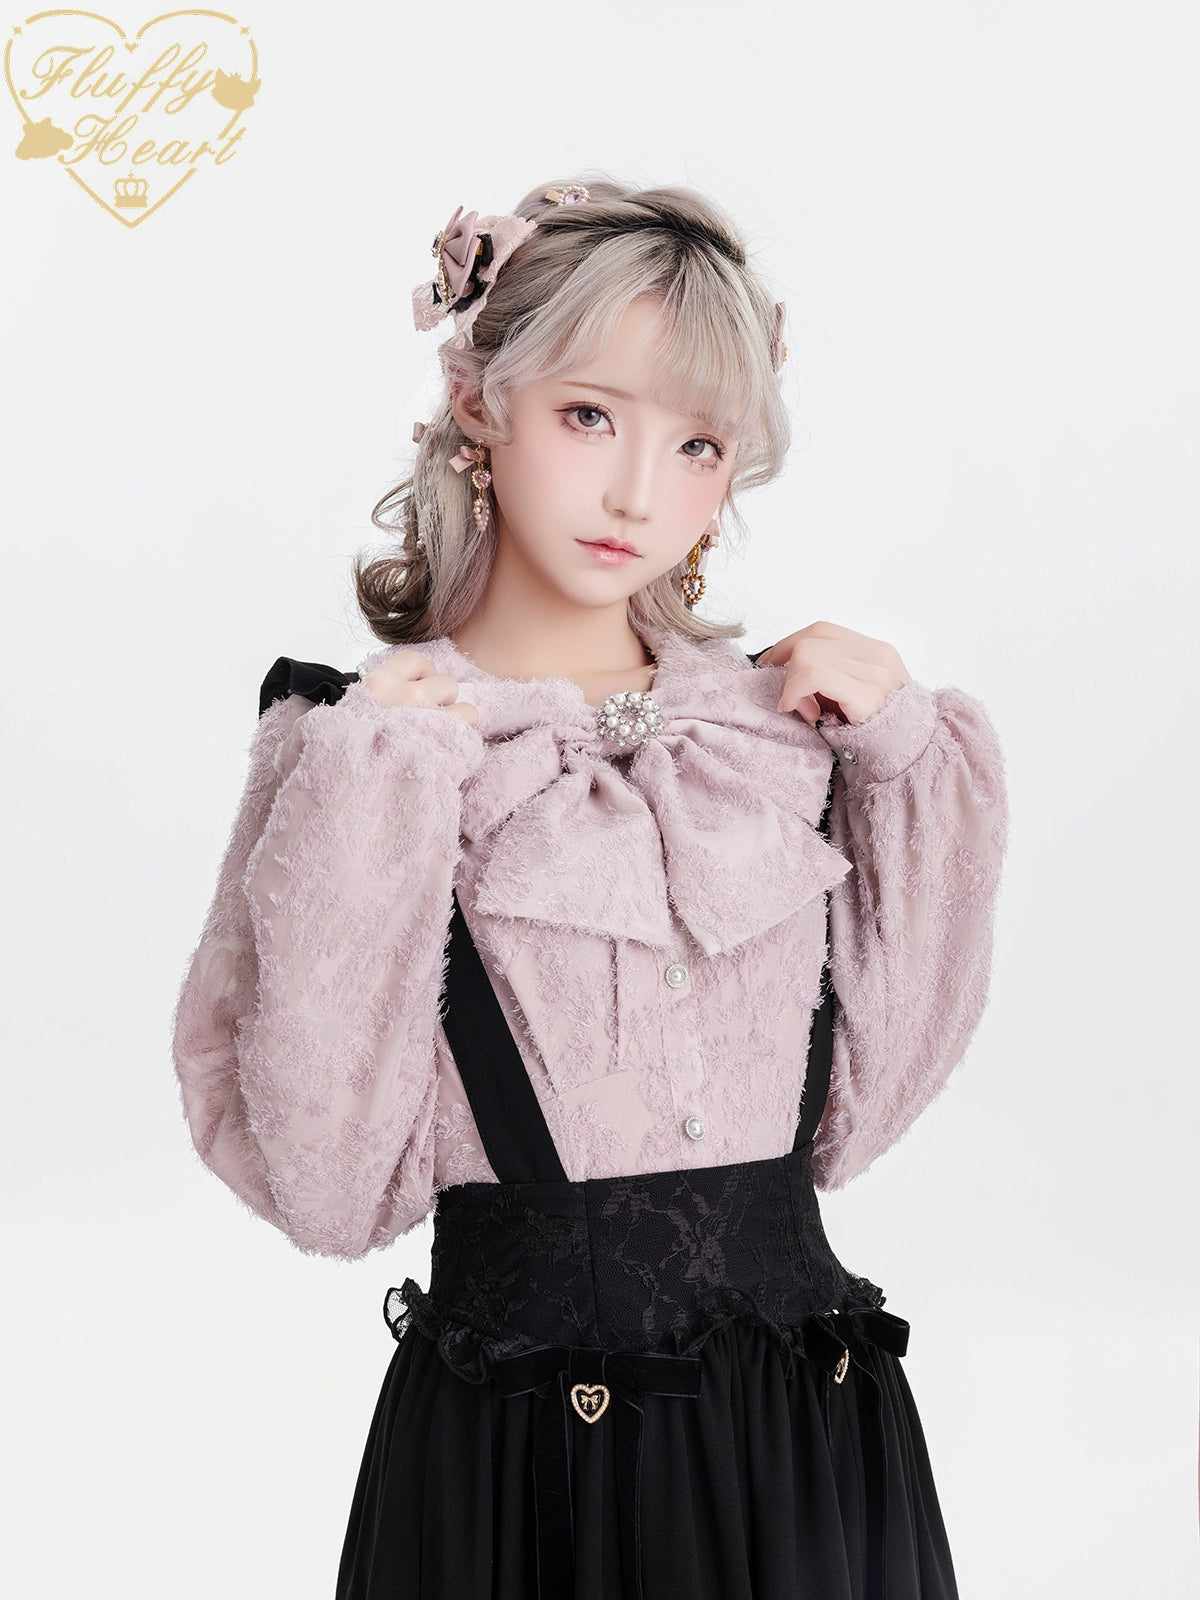 Jirai Kei Blouse White Pink Lace Chiffon Pearl Long Sleeve Shirt 33754:443436